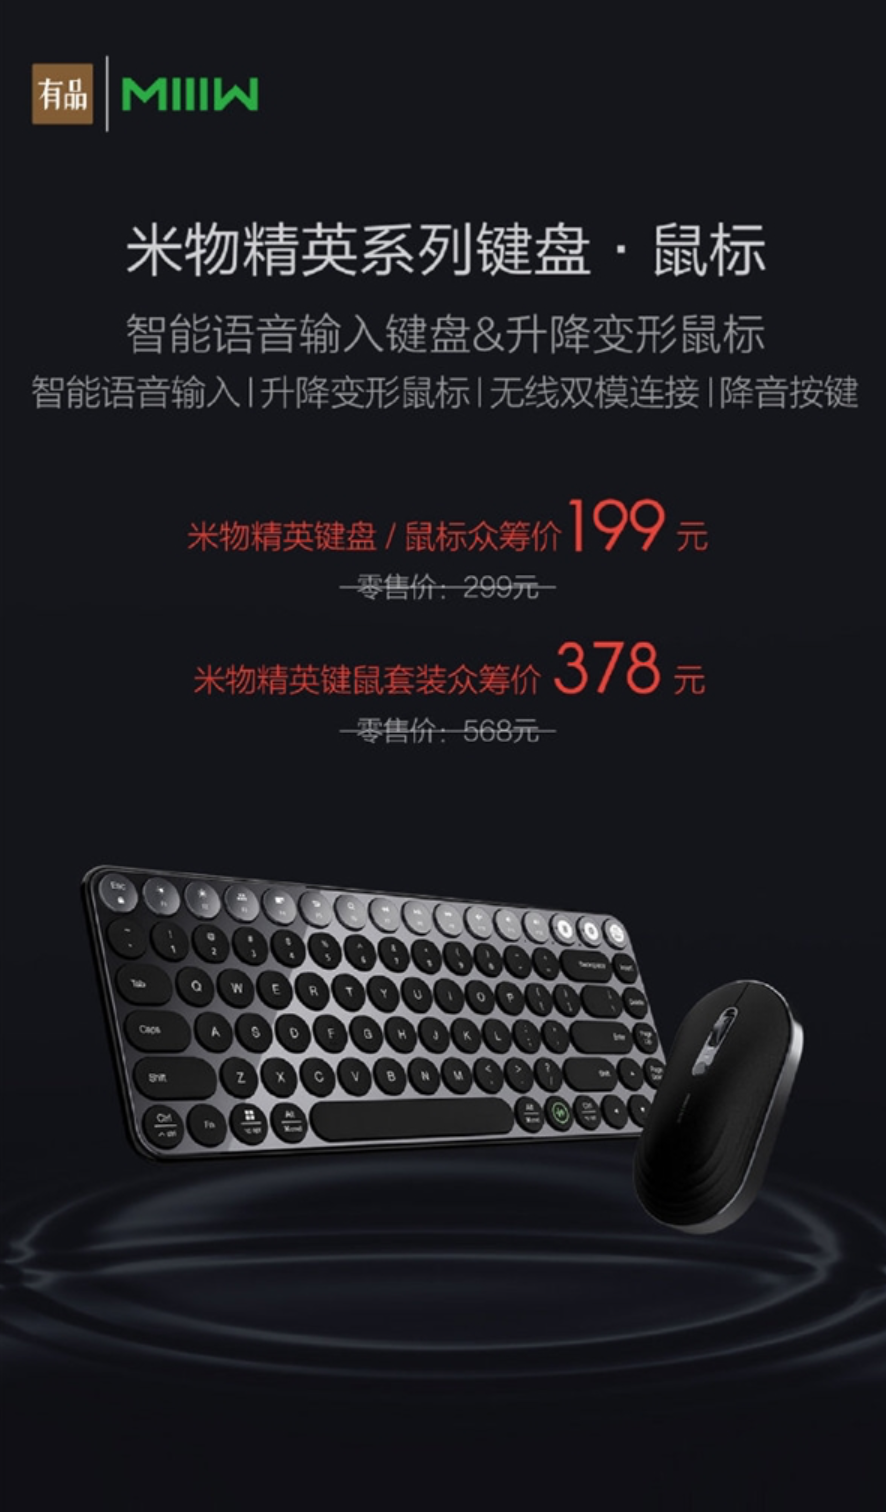 Klávesnica Xiaomi MIIW Elite a myš MIIW Elite boli uvedené na trh 25. februára 302